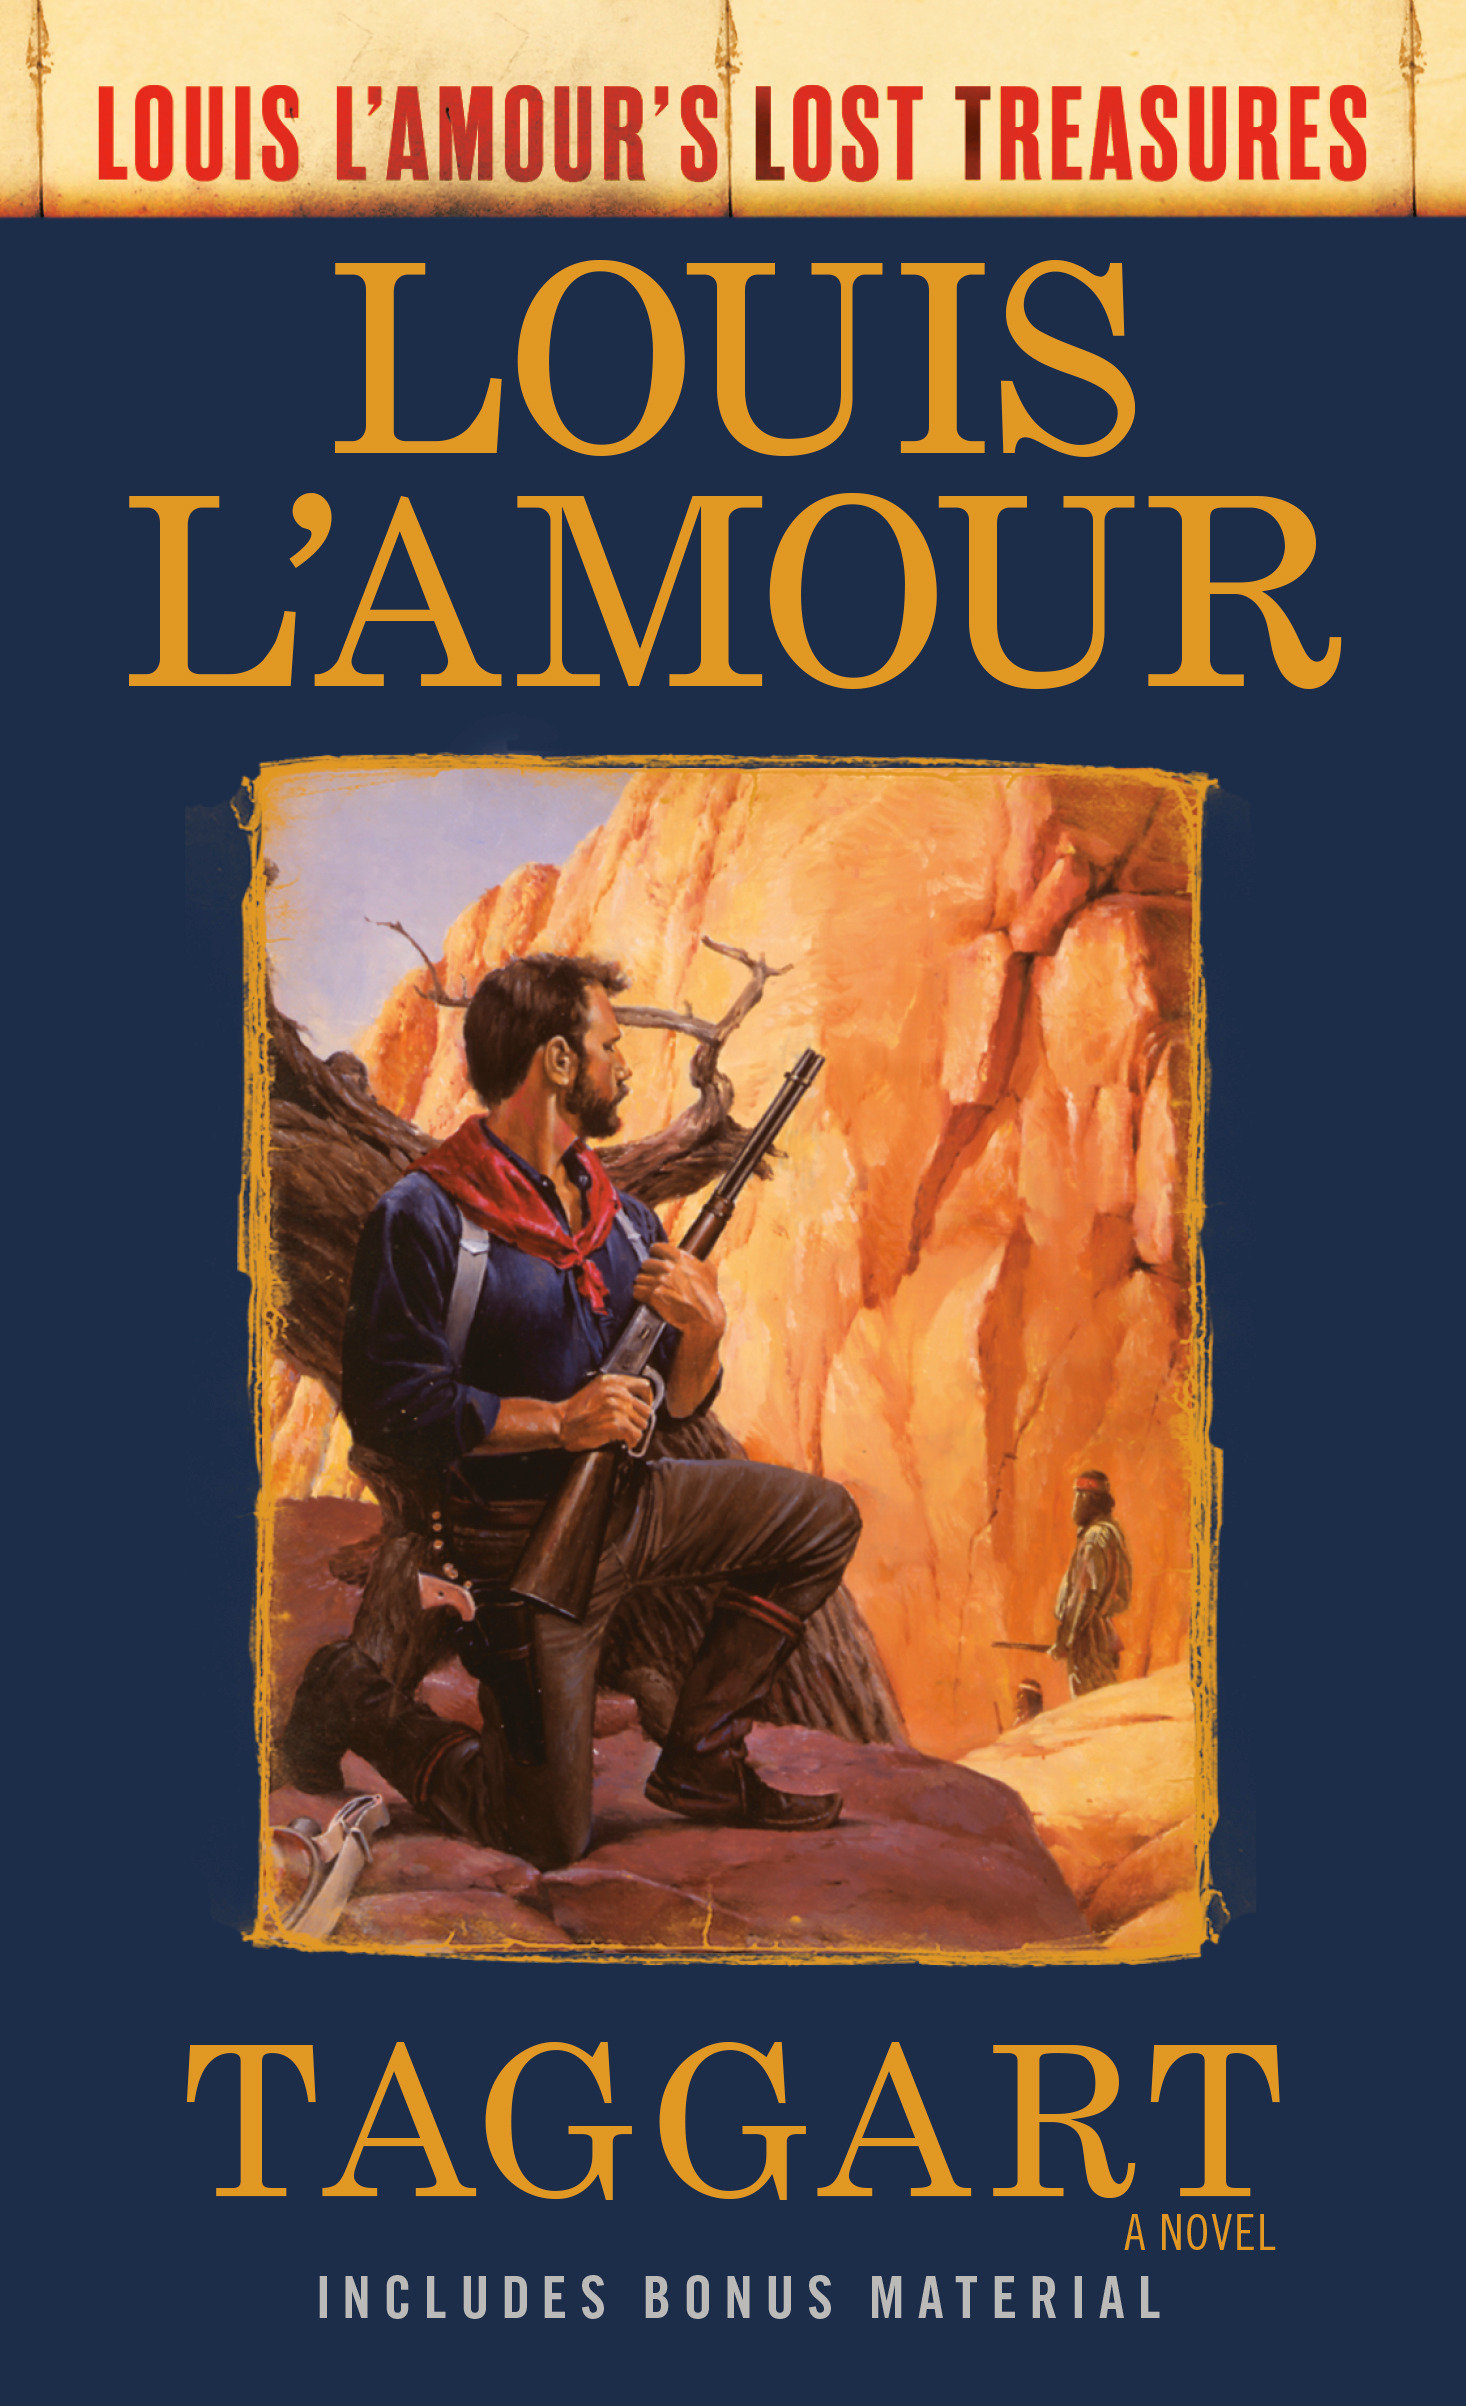 Image de couverture de Taggart (Louis L'Amour's Lost Treasures) [electronic resource] : A Novel